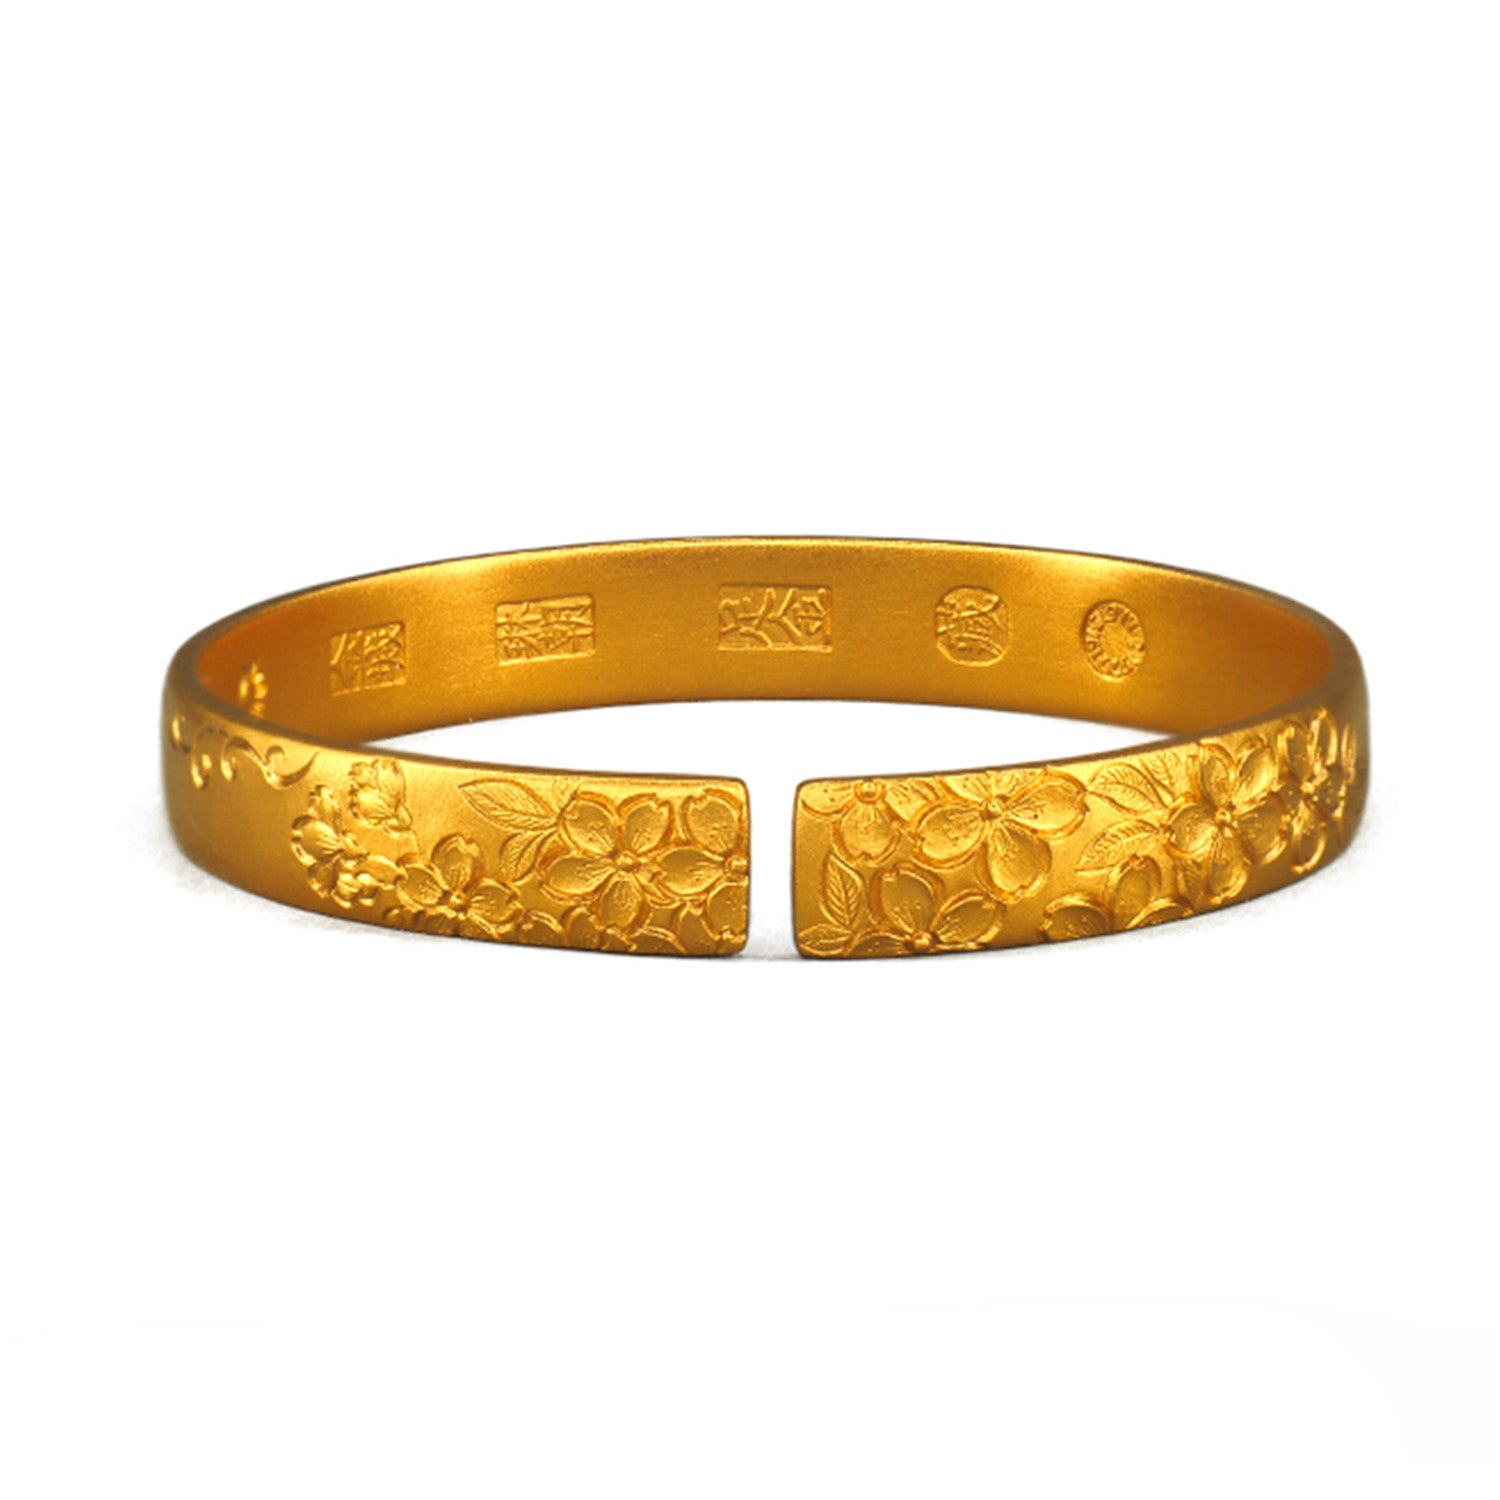 EVECOCO Full Gold Bracelet,Micro Relief Flower Pattern For Female,50g